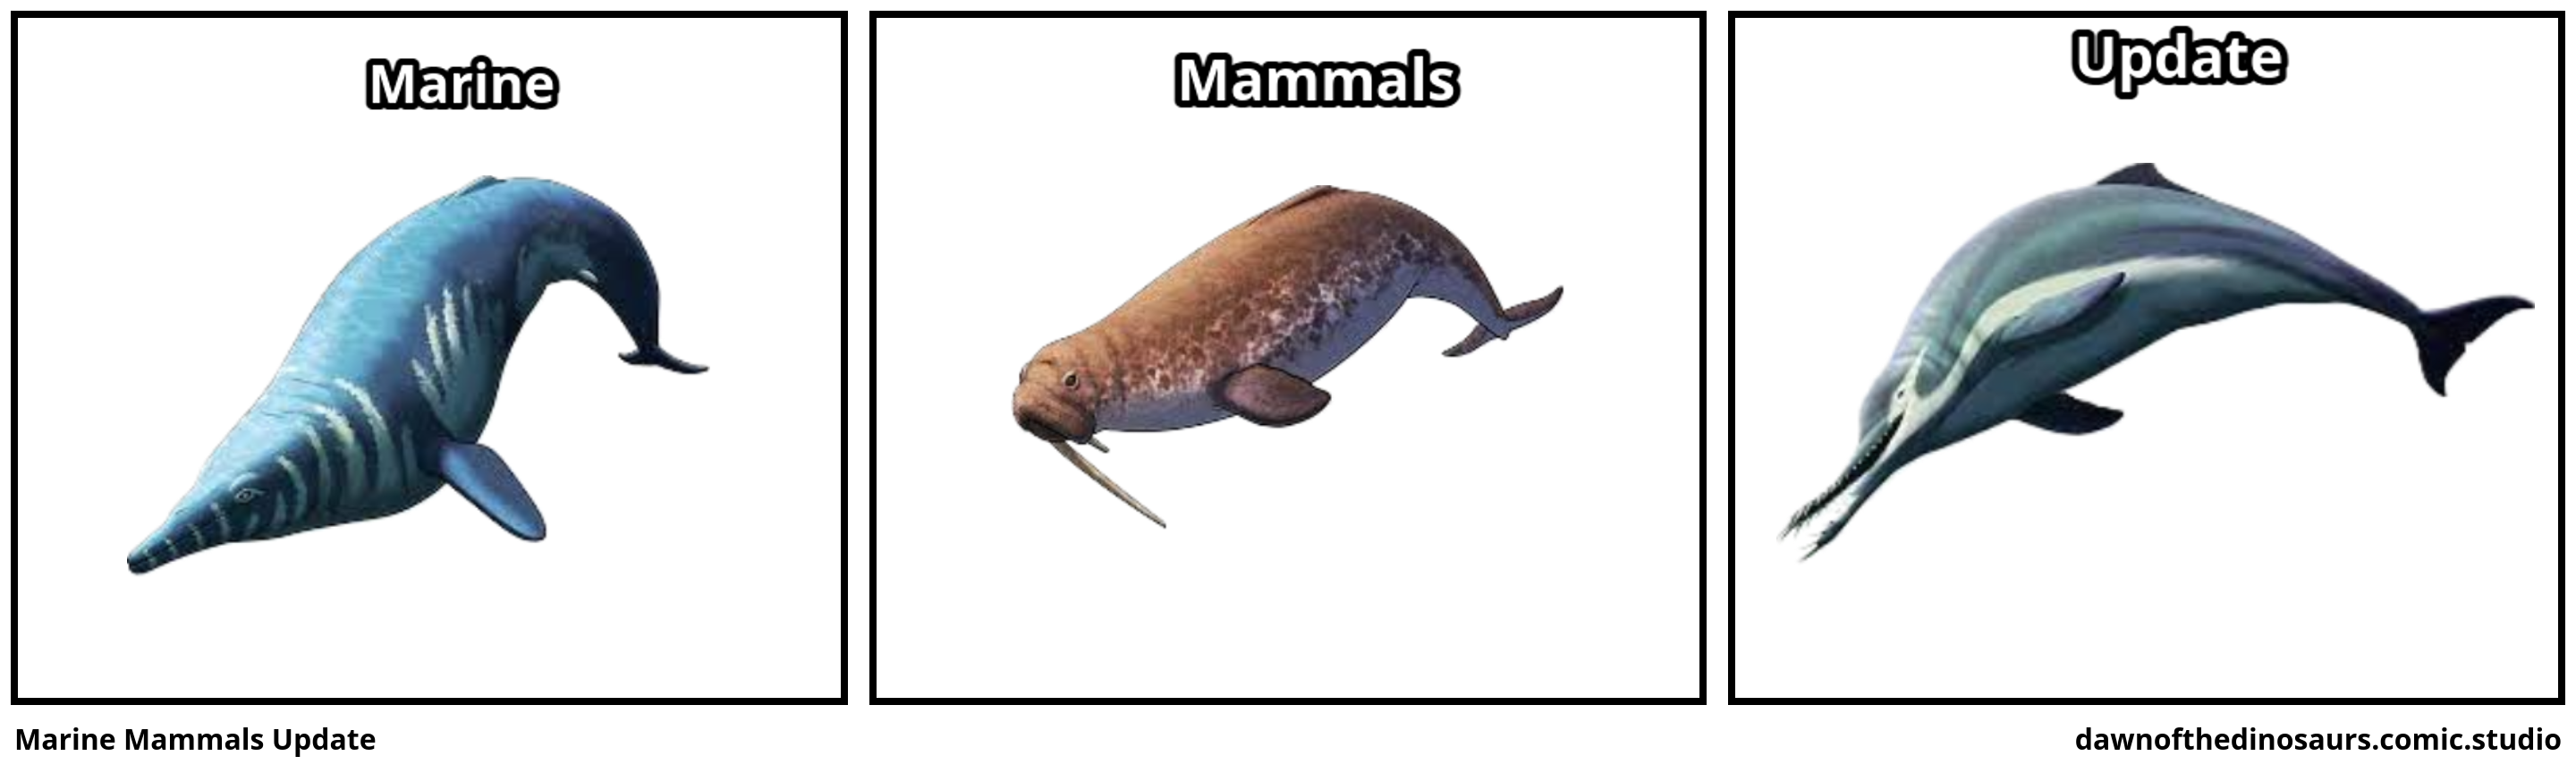 Marine Mammals Update